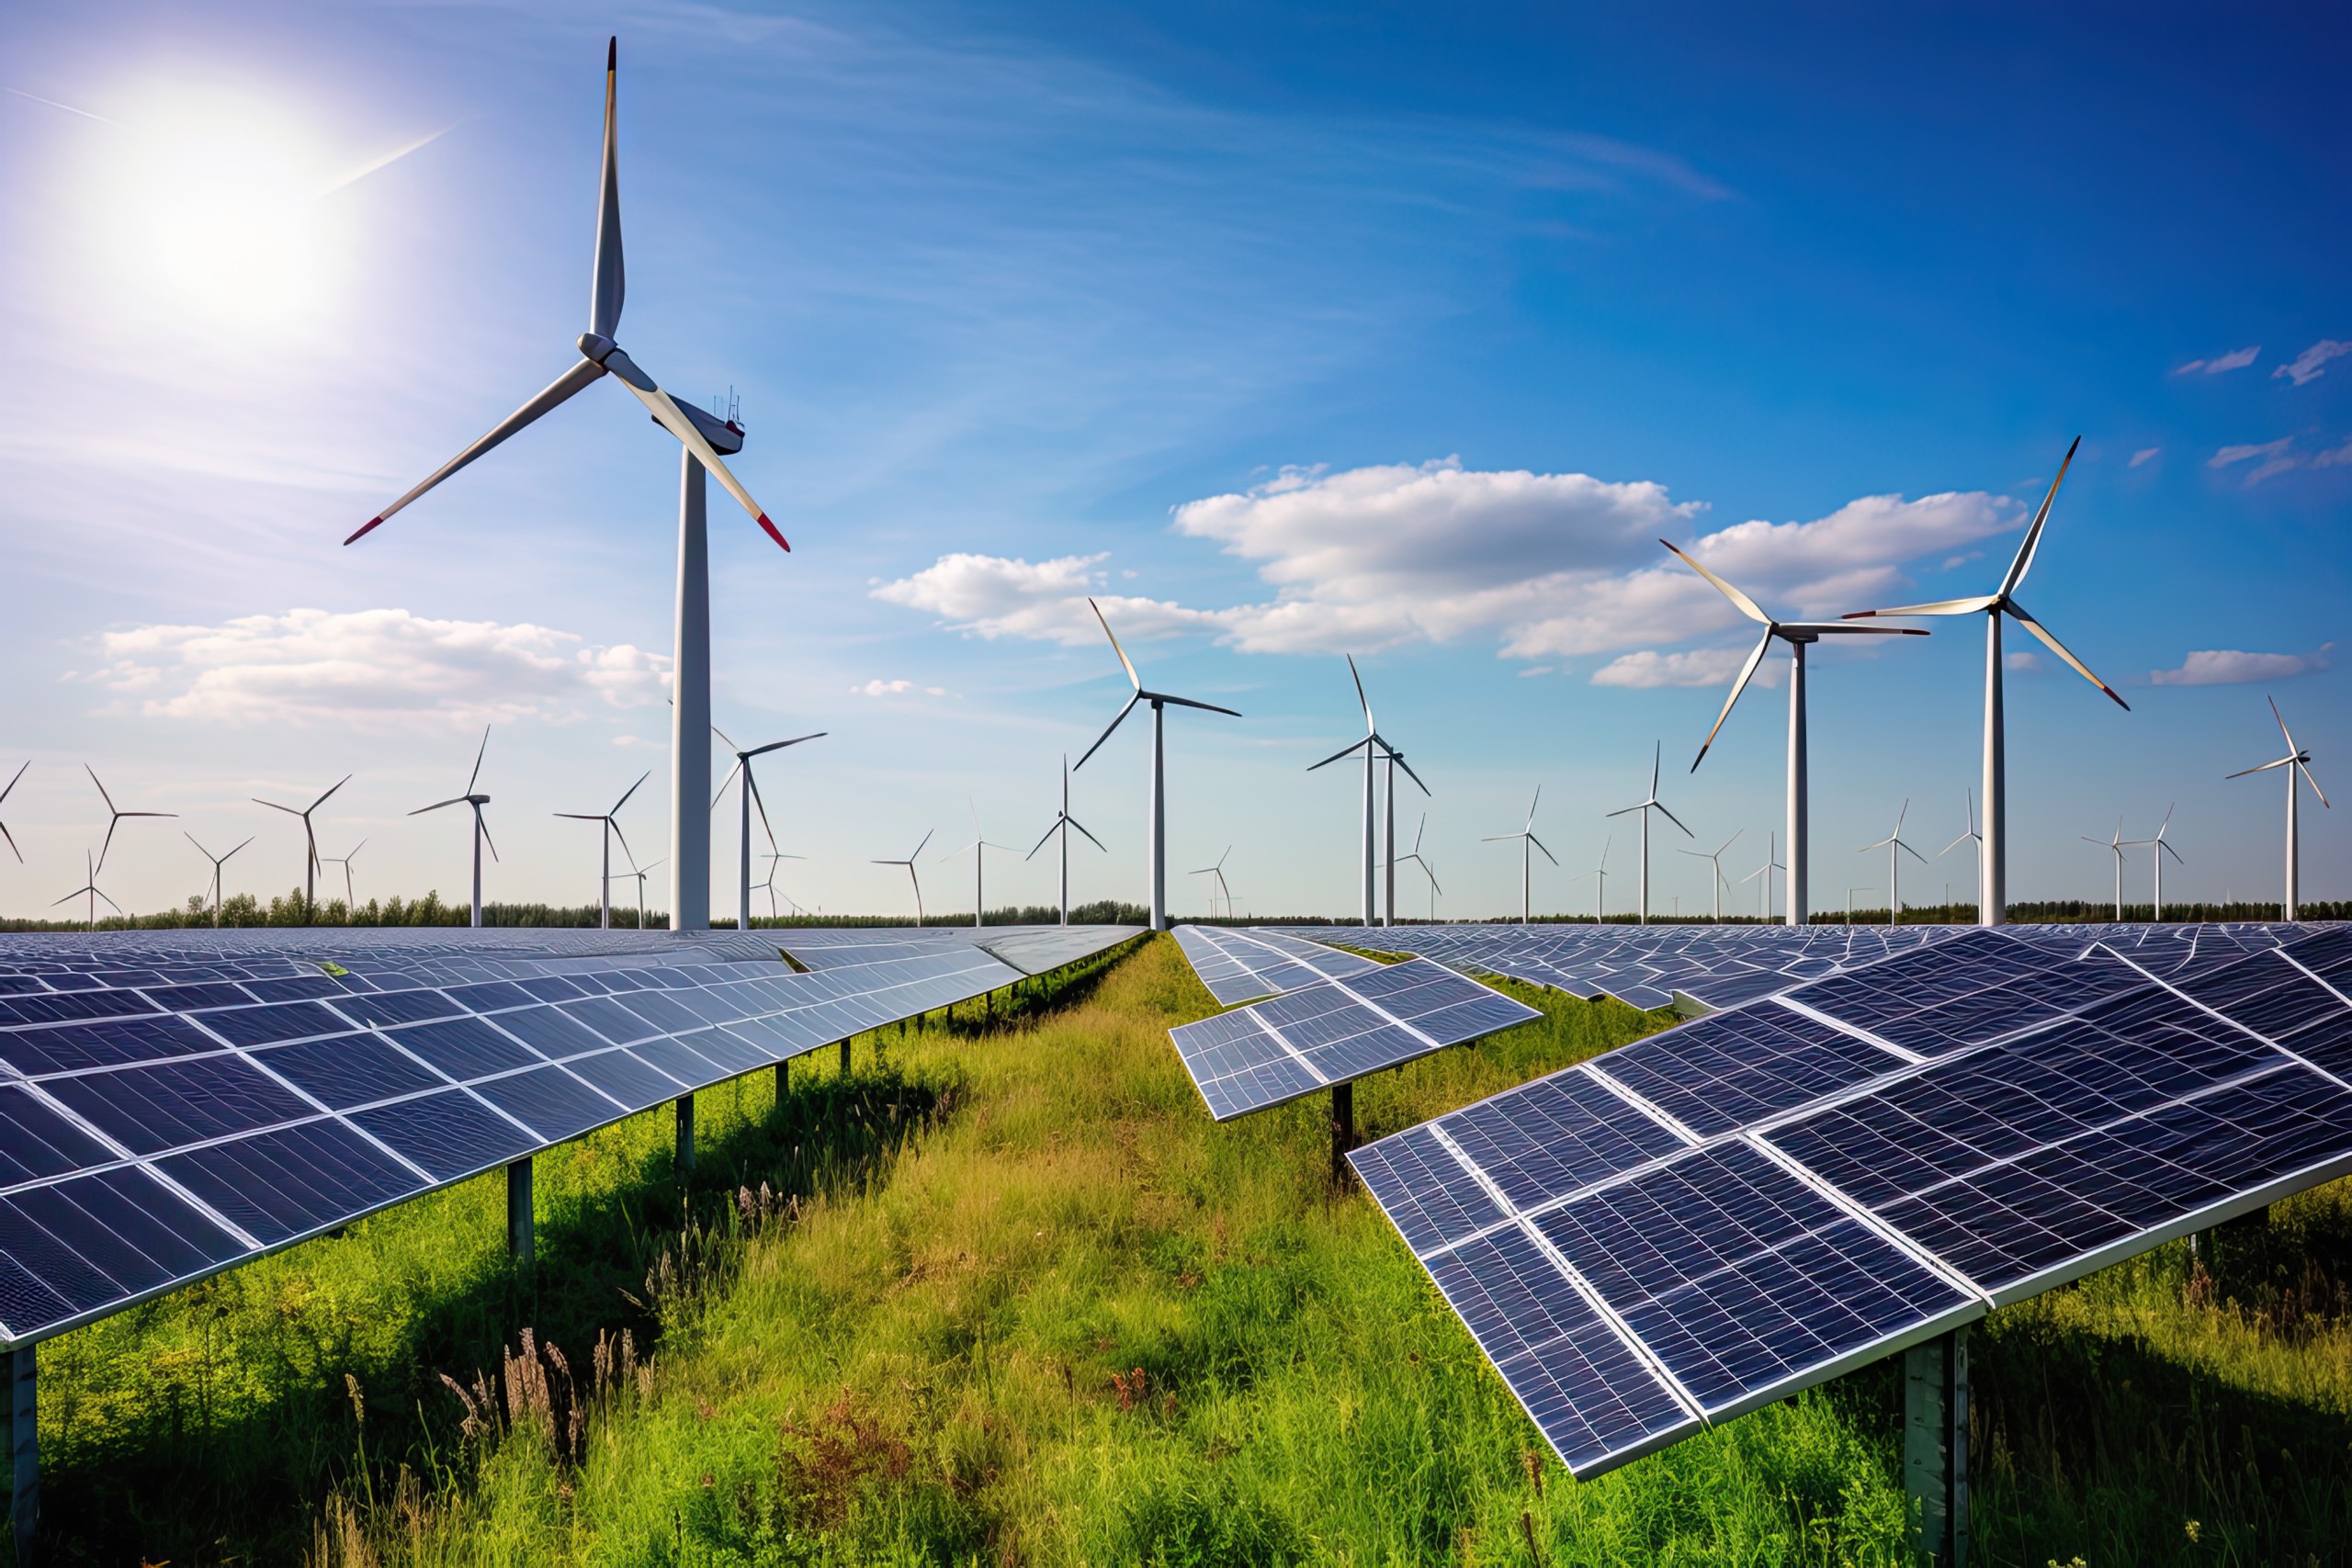 Encavis – Angesichts der Kapazitätsausbaupläne bis 2027 habe der Wind- und Solarparkbetreiber mehr Chancen als Risiken